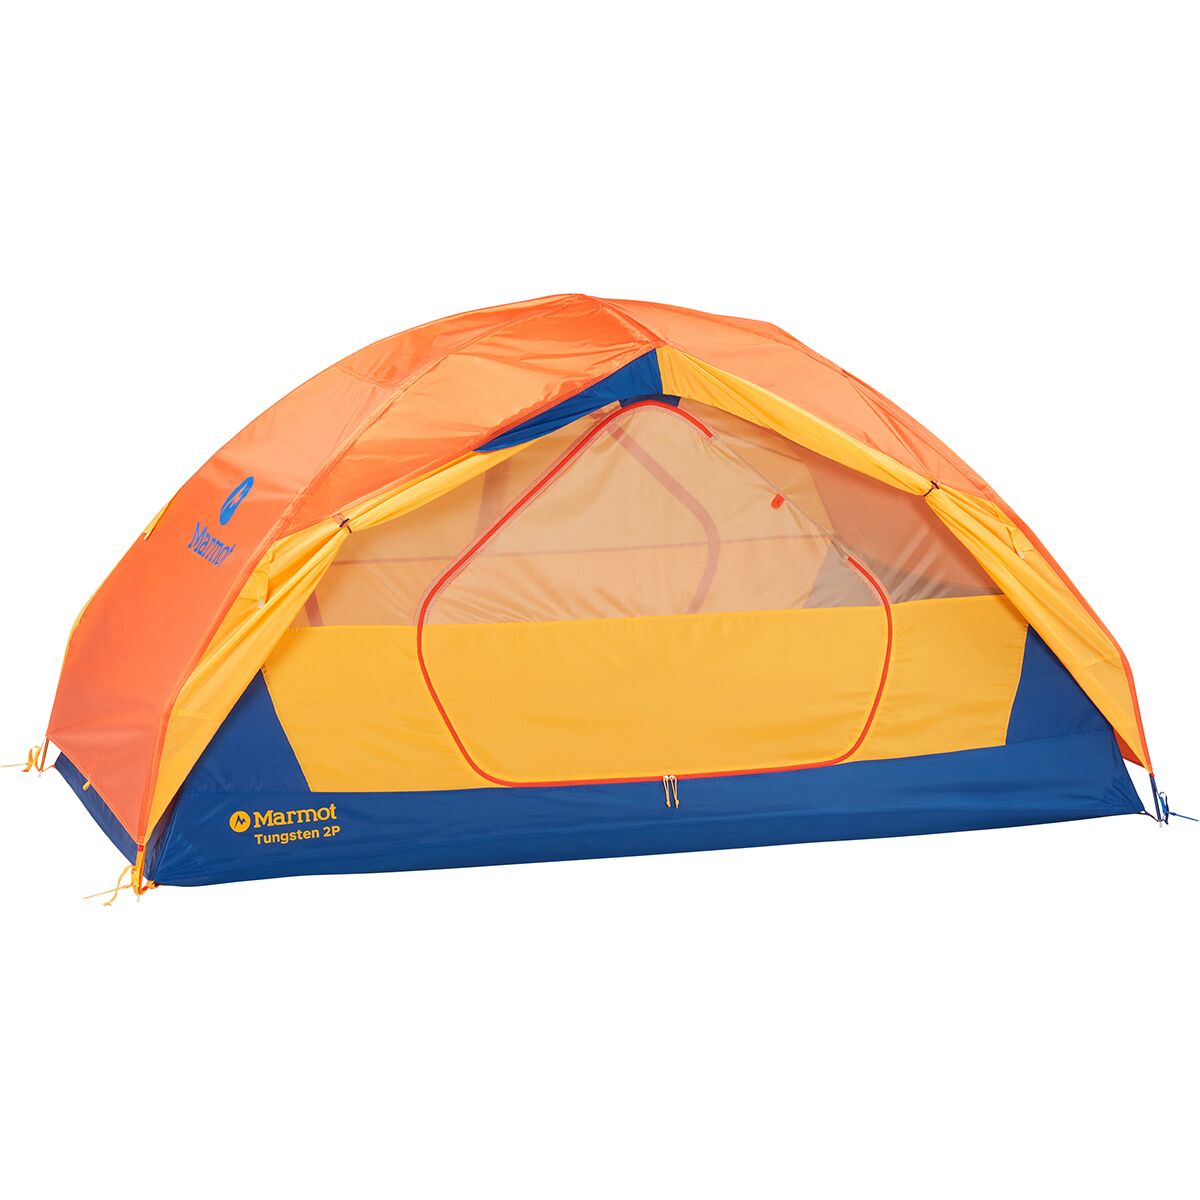 Sluit een verzekering af Informeer Vulkaan Marmot Tungsten Tent: 2-Person 3-Season - Hike & Camp